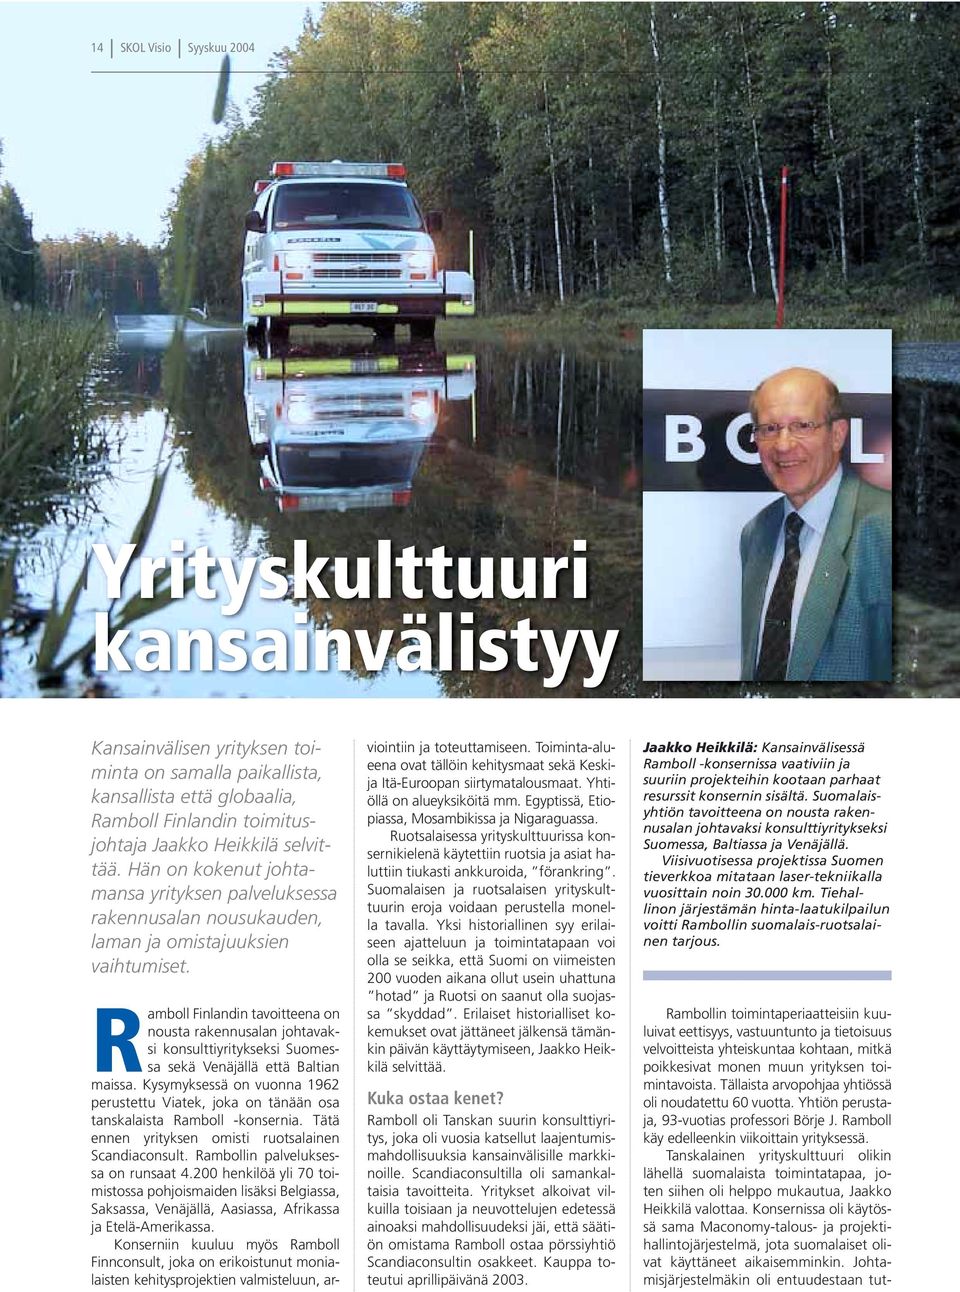 Ramboll Finlandin tavoitteena on nousta rakennusalan johtavaksi konsulttiyritykseksi Suomessa sekä Venäjällä että Baltian maissa.